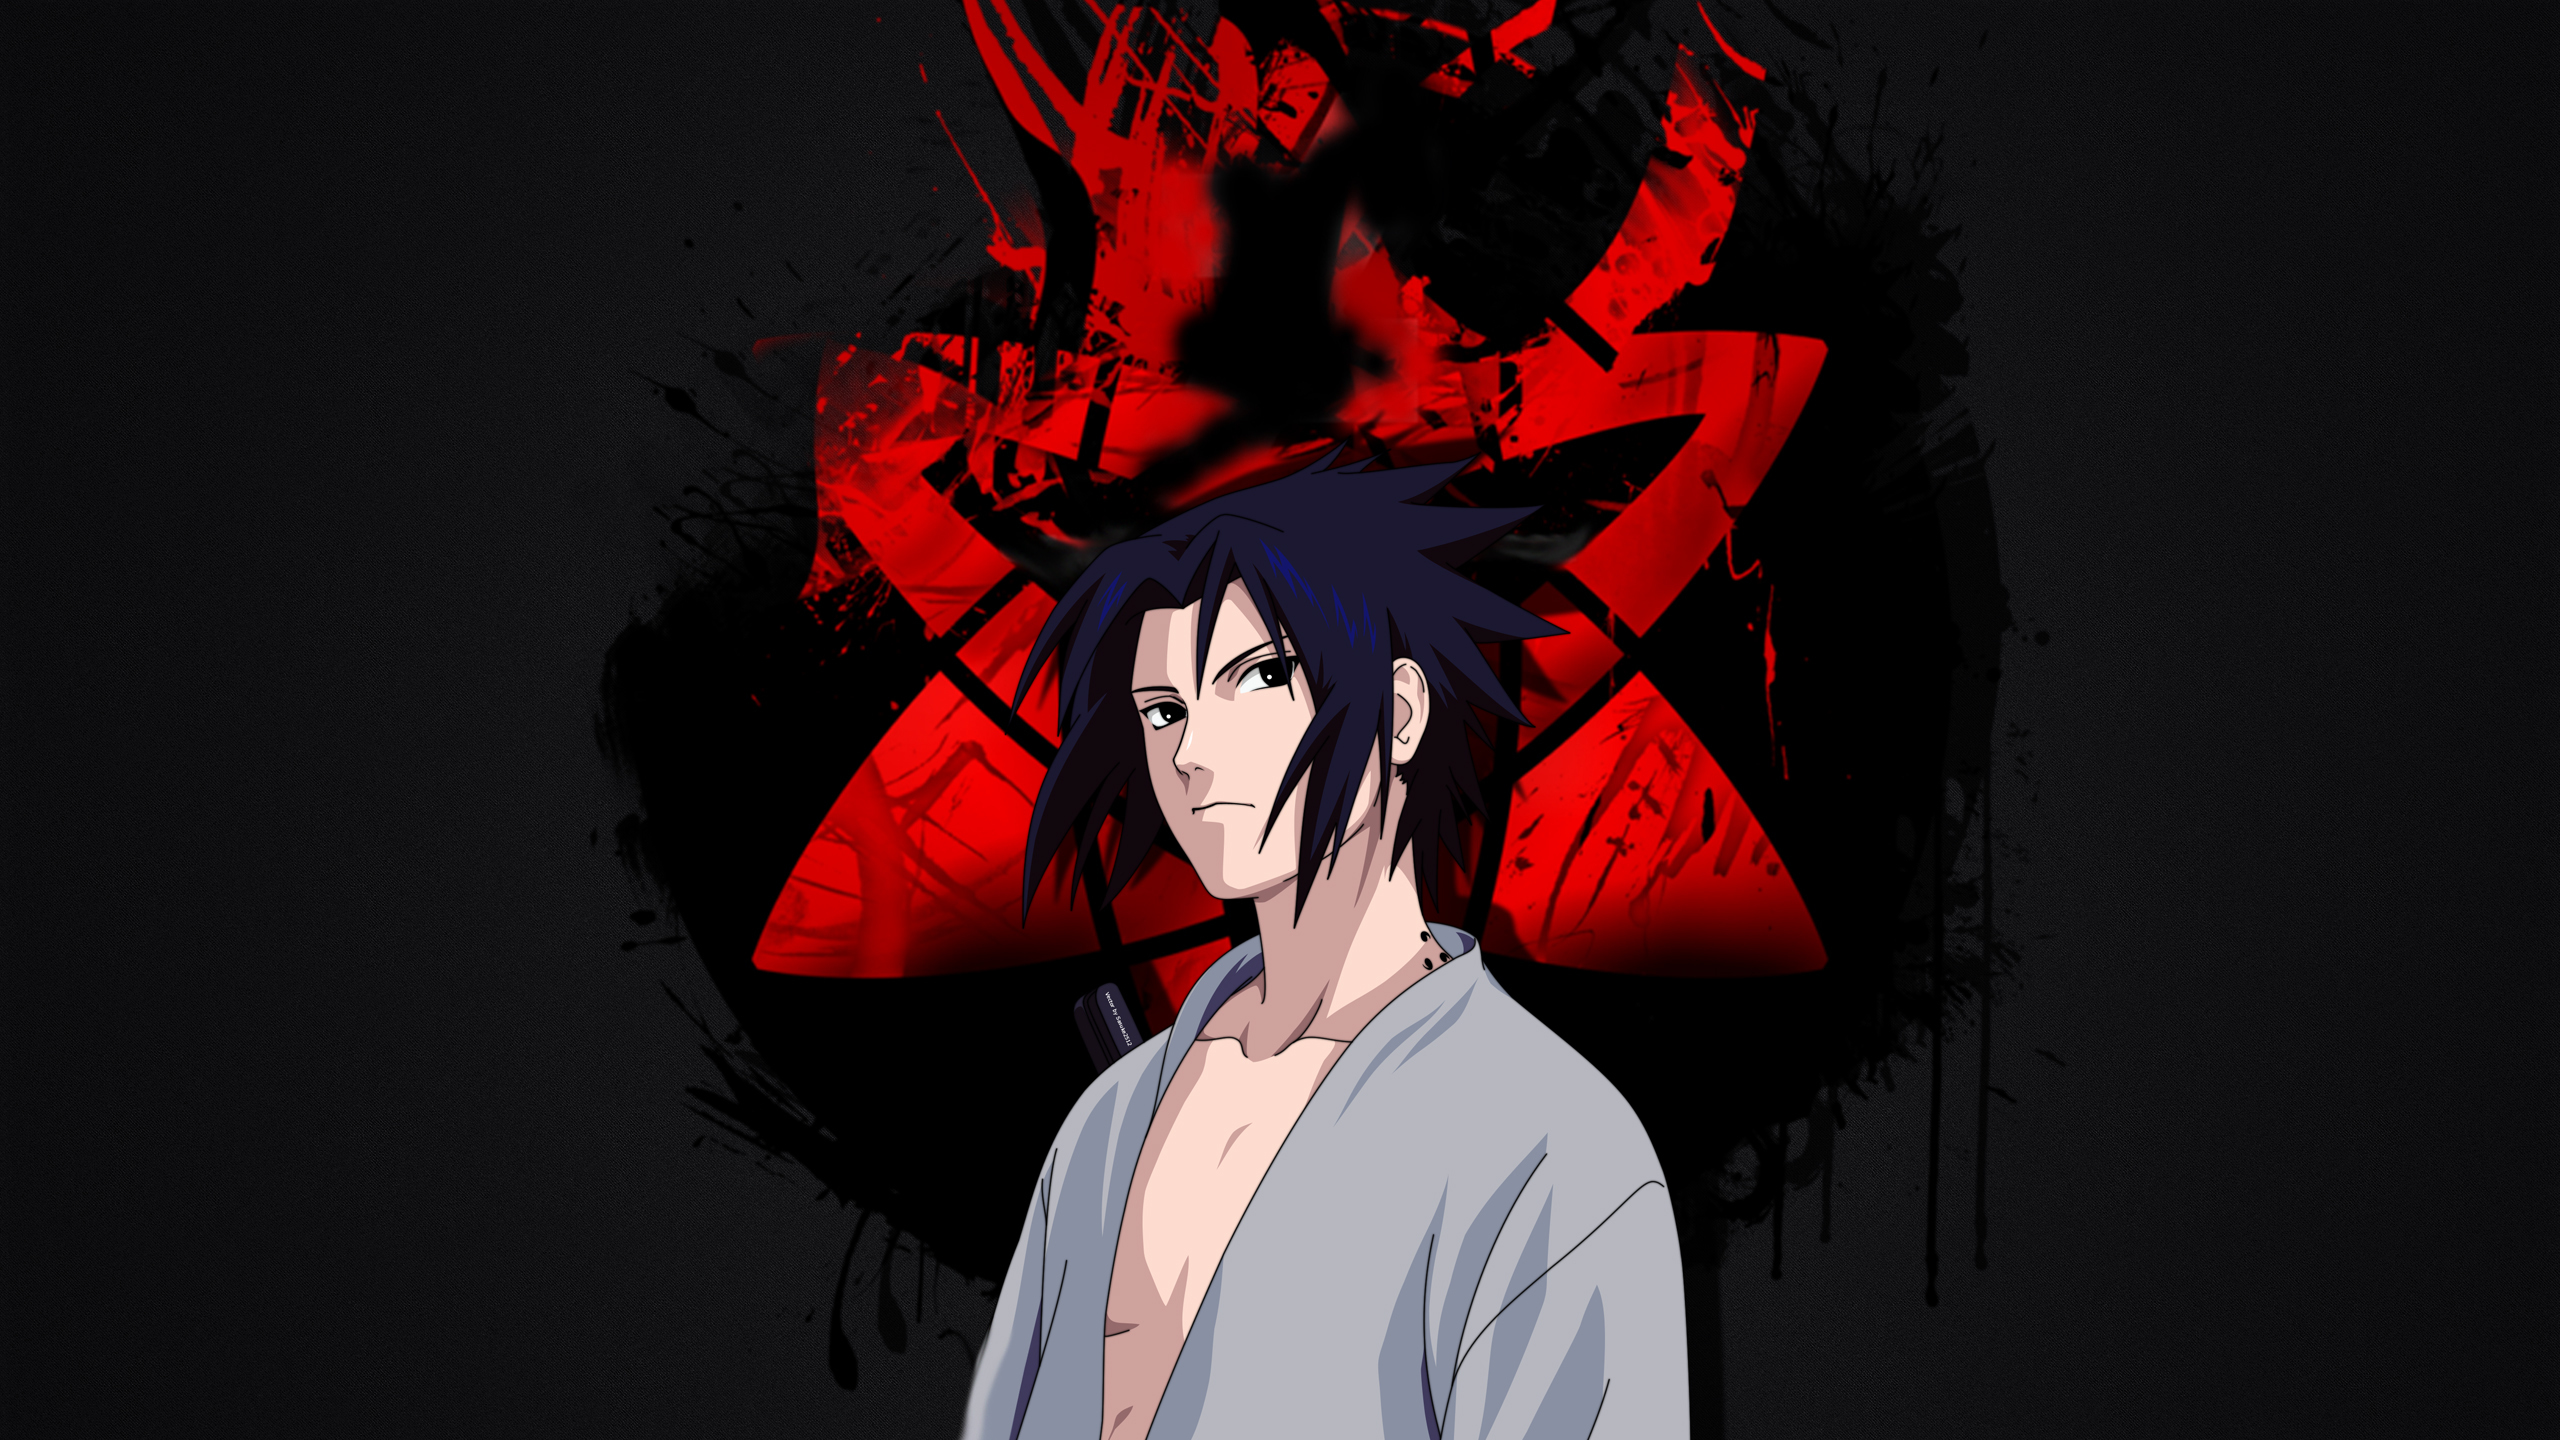 Sasuke Uchiha 1440P Resolution Wallpaper, HD Anime